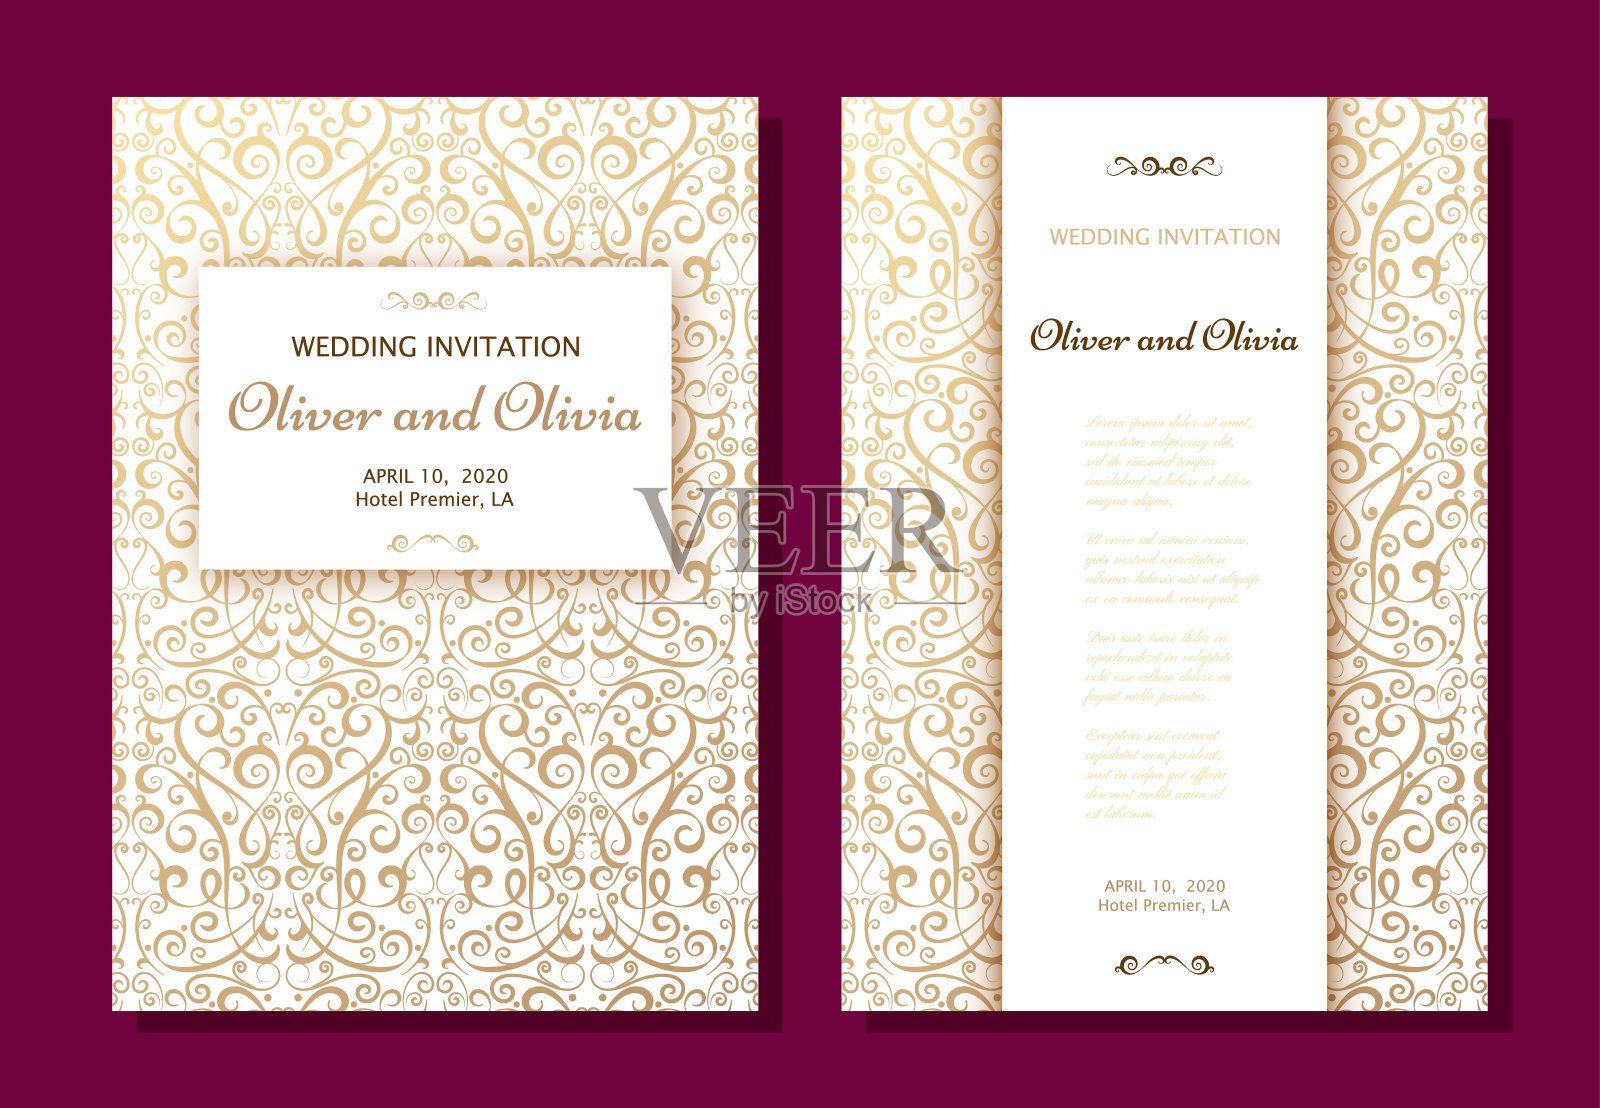 一套婚礼邀请模板。封面设计与黄金锦缎饰品设计模板素材